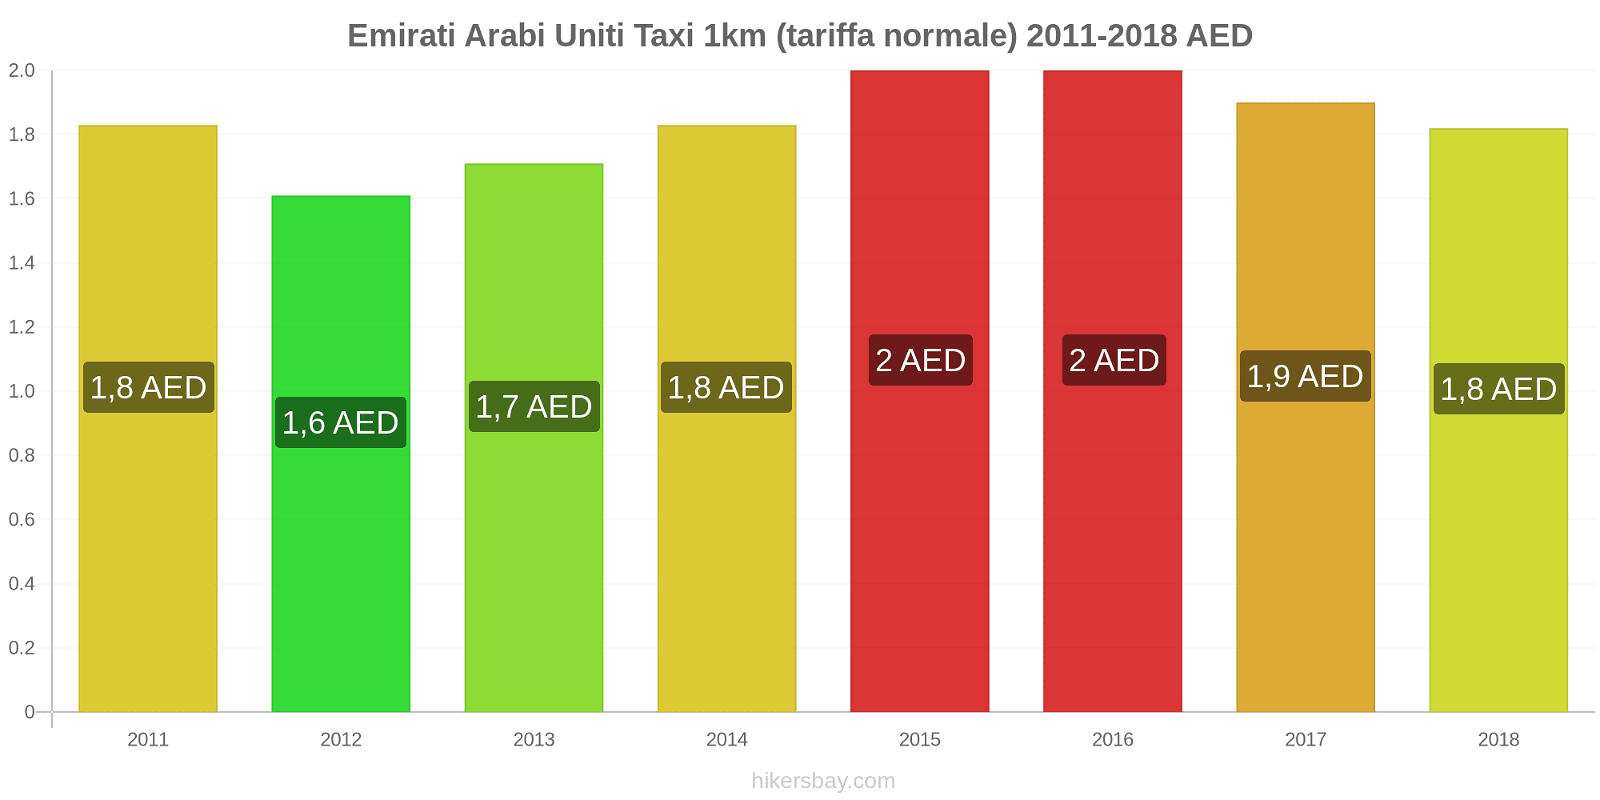 Emirati Arabi Uniti cambi di prezzo Taxi 1km (tariffa normale) hikersbay.com